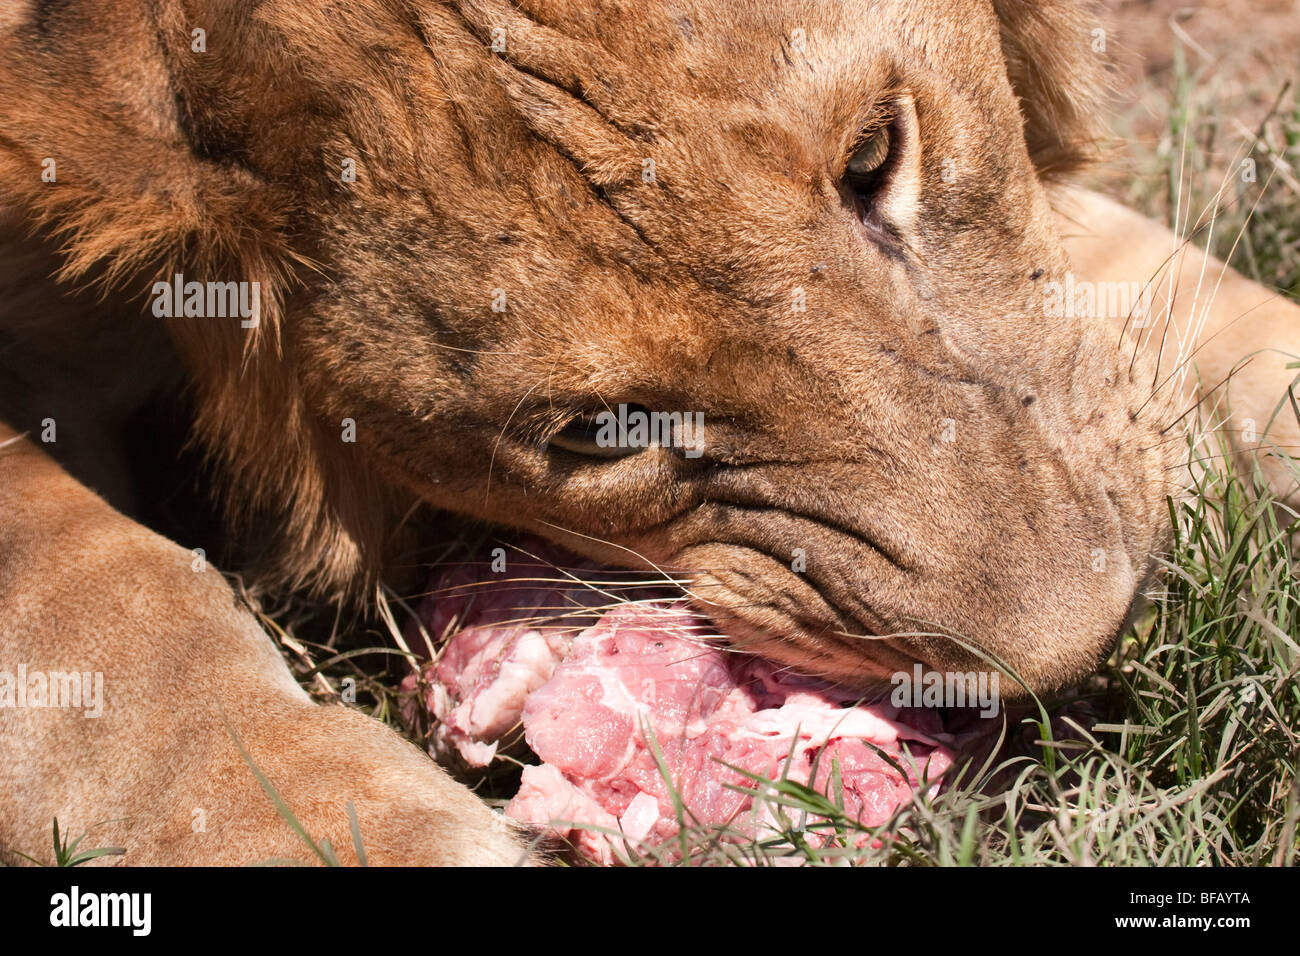 Weiblichen afrikanischen Löwen, Fleisch zu essen, auf dem Boden  Stockfotografie - Alamy